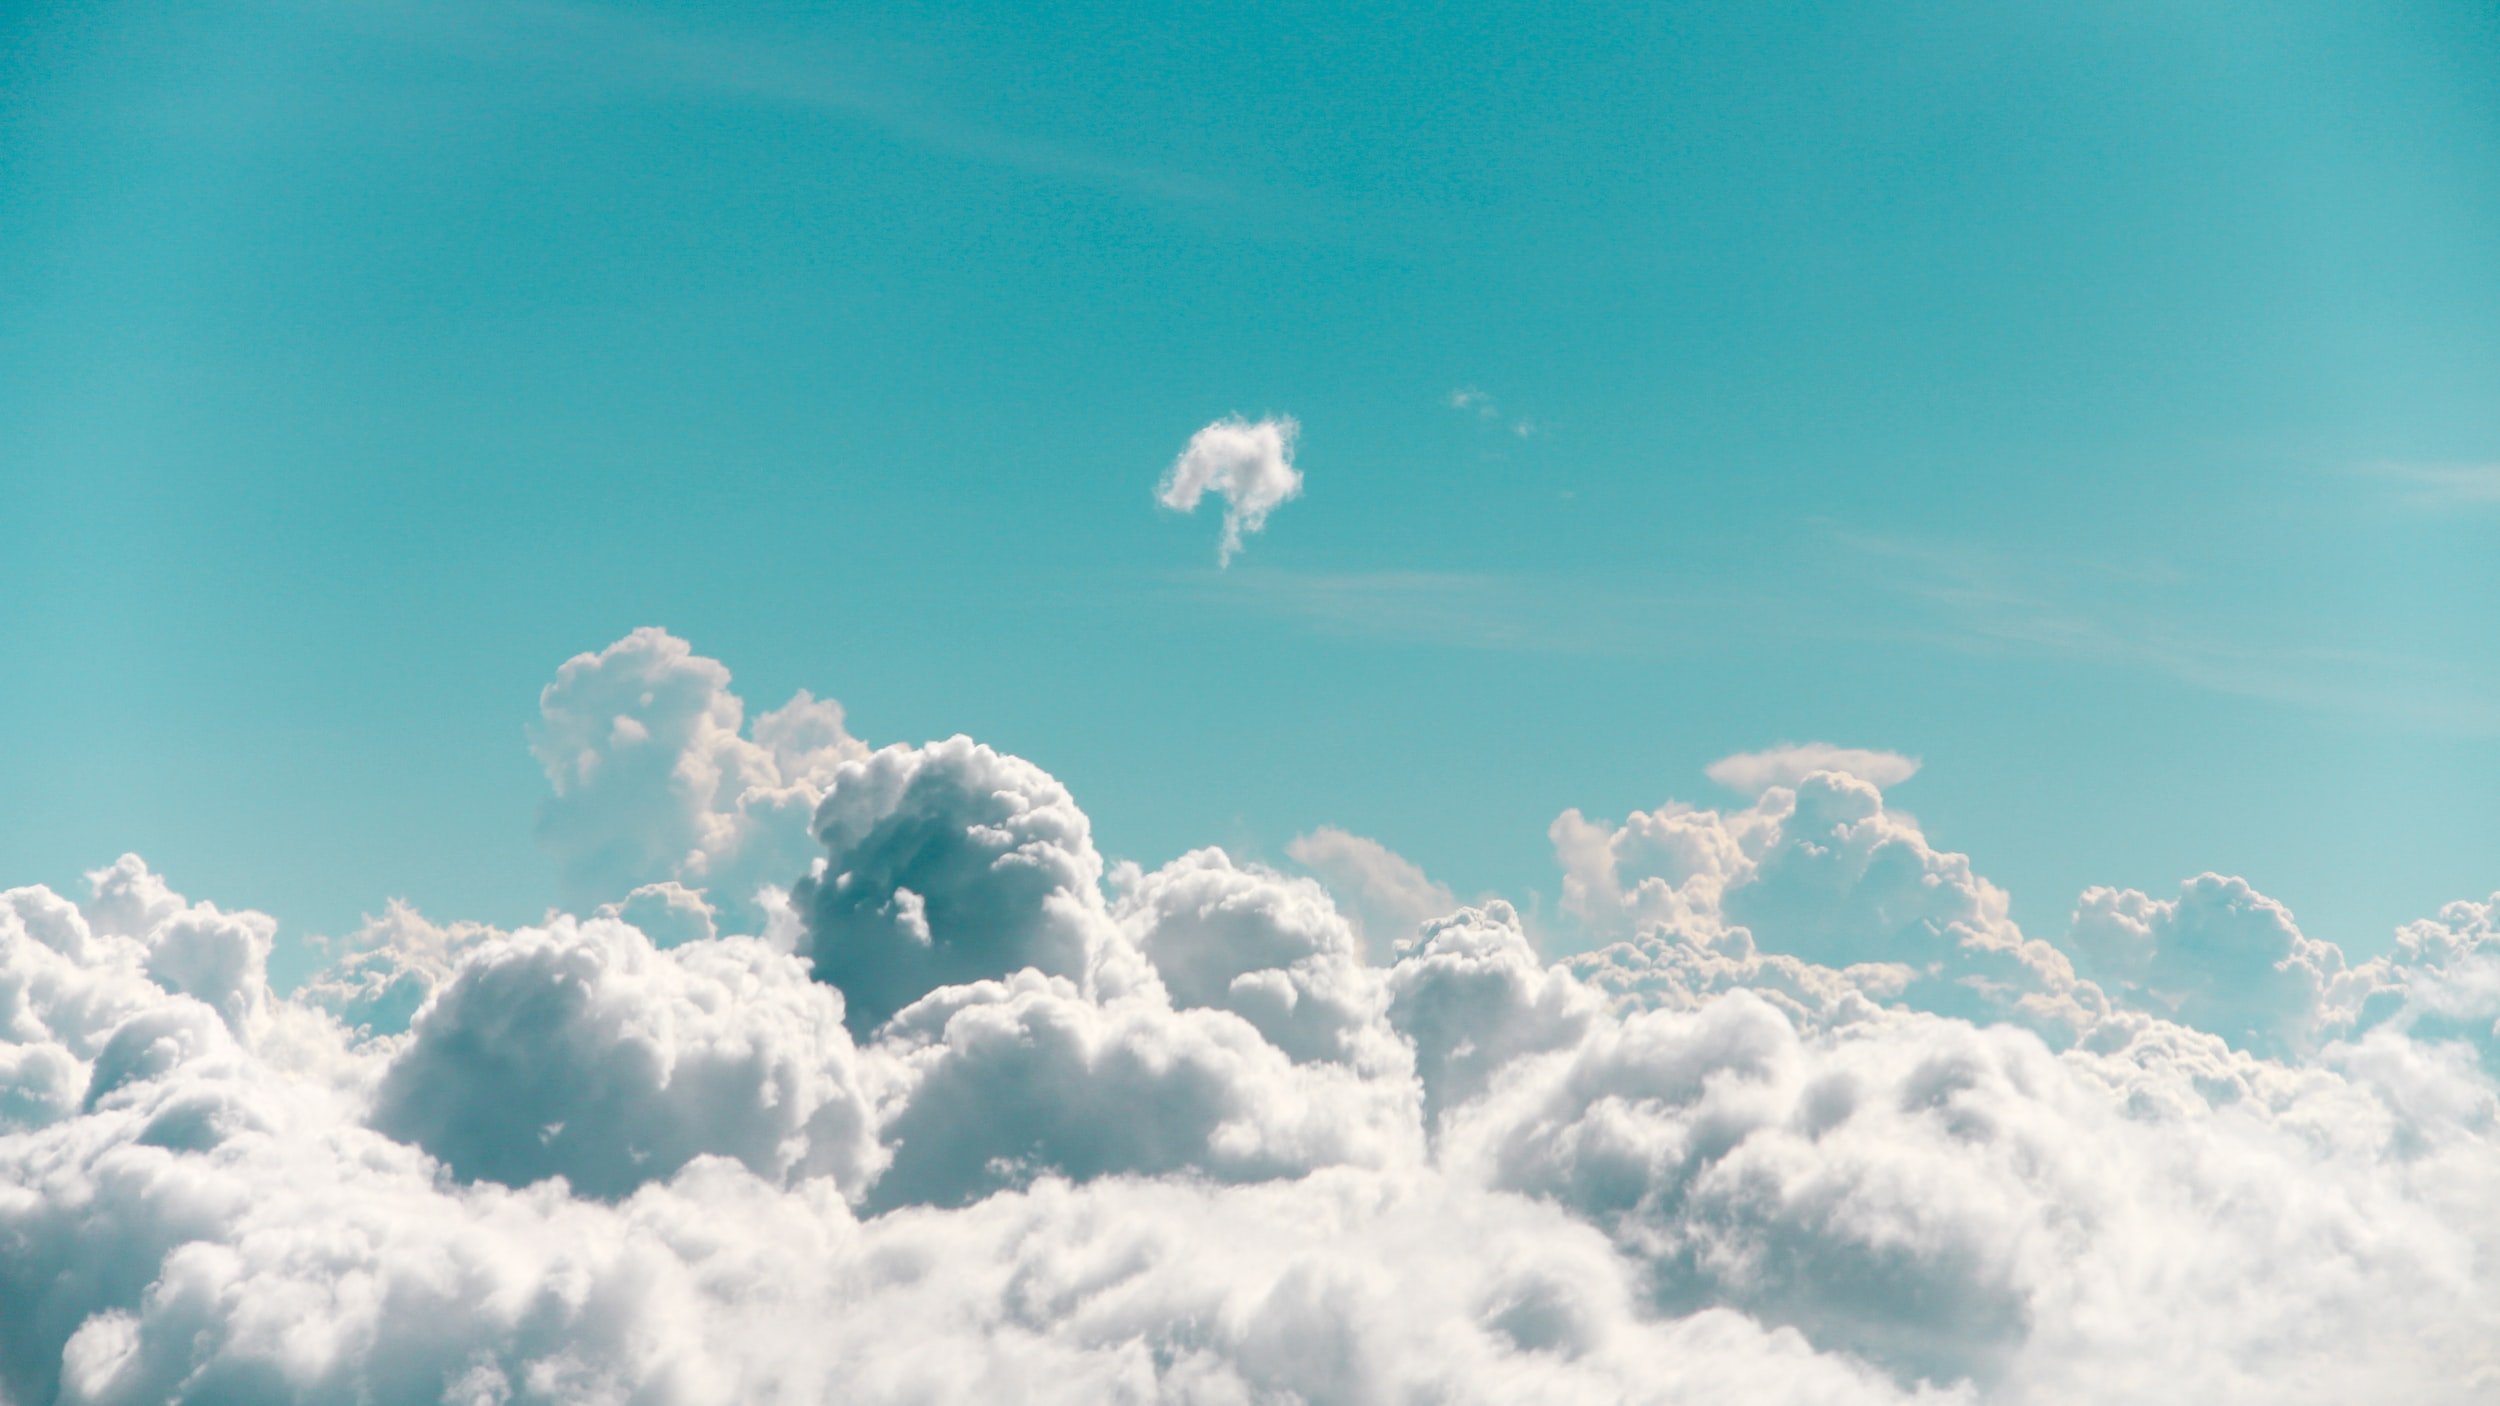 Cloud 9 Cannabis - Fly High, With Cloud Nine Cannabis